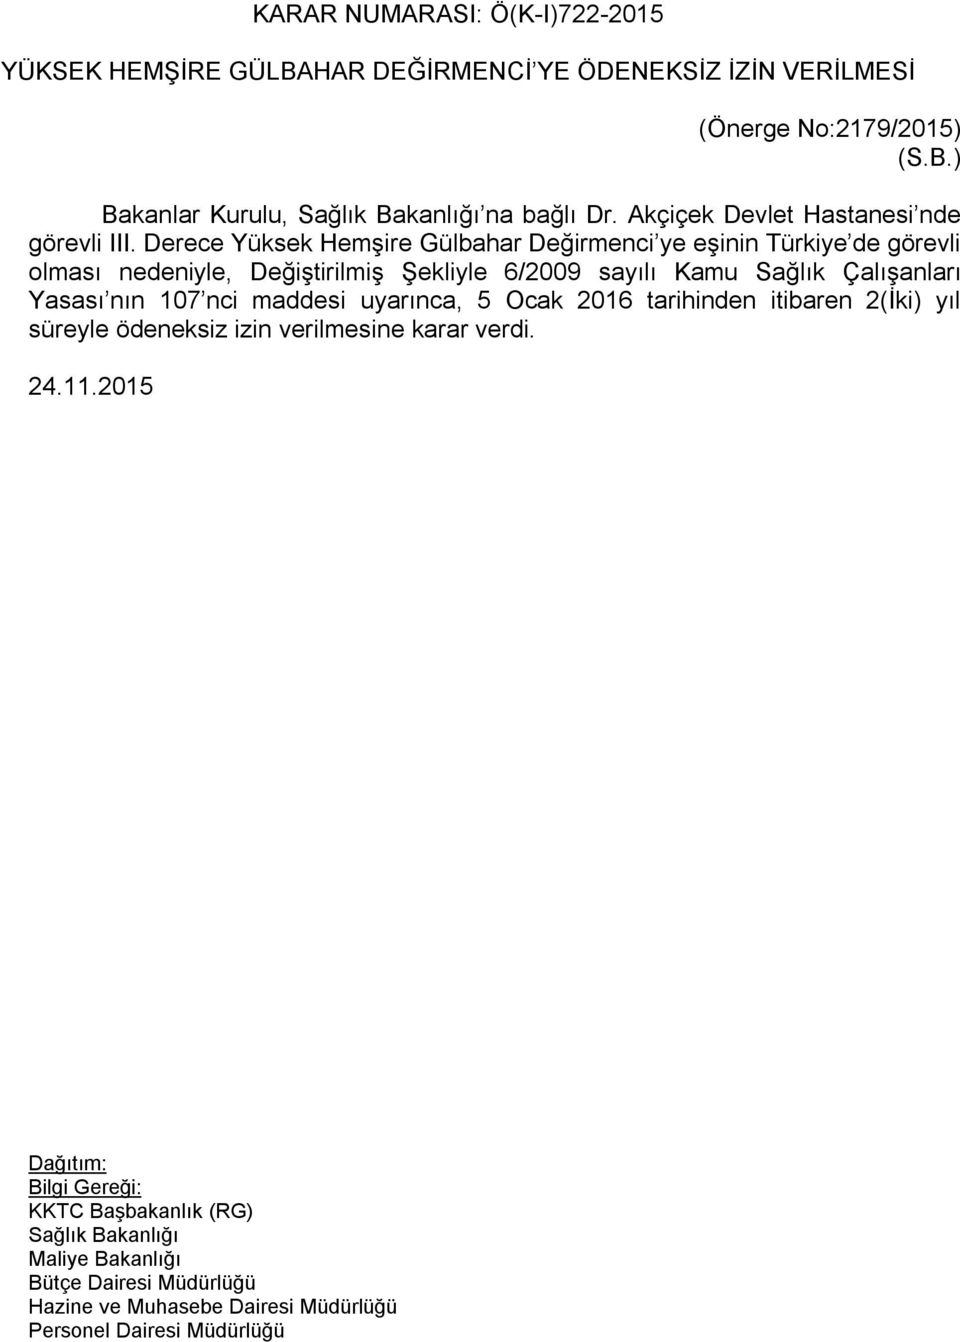 Derece Yüksek Hemşire Gülbahar Değirmenci ye eşinin Türkiye de görevli olması nedeniyle, Değiştirilmiş Şekliyle 6/2009 sayılı Kamu Sağlık